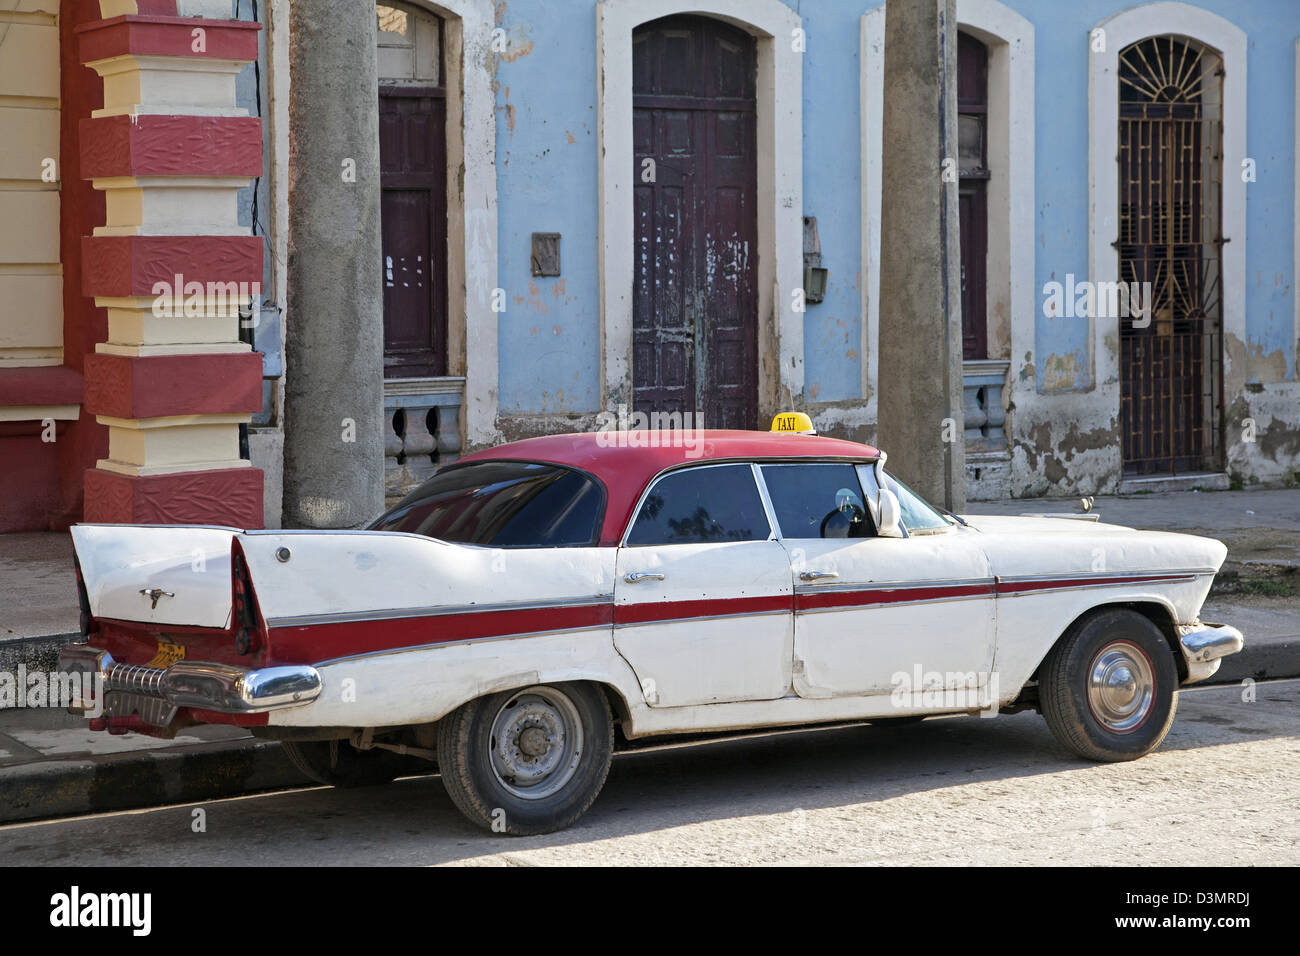 Vecchia degli anni cinquanta vintage americano auto / Yank serbatoio utilizzato come taxi a Holguin, Cuba, Caraibi Foto Stock